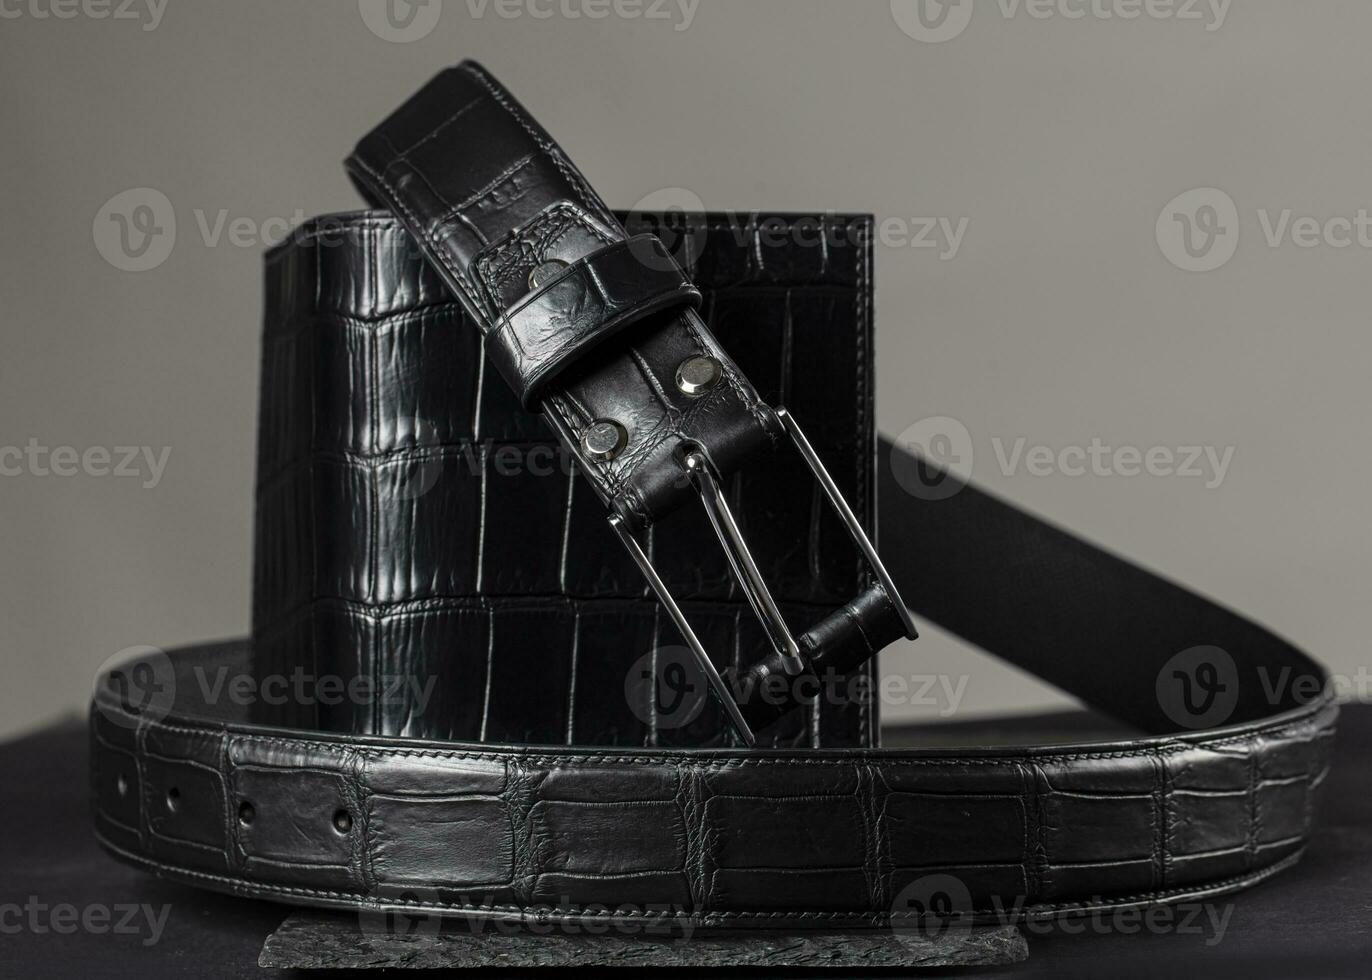 costoso productos cinturón y bolso hecho de cocodrilo piel. élite genuino vestido cuero. foto